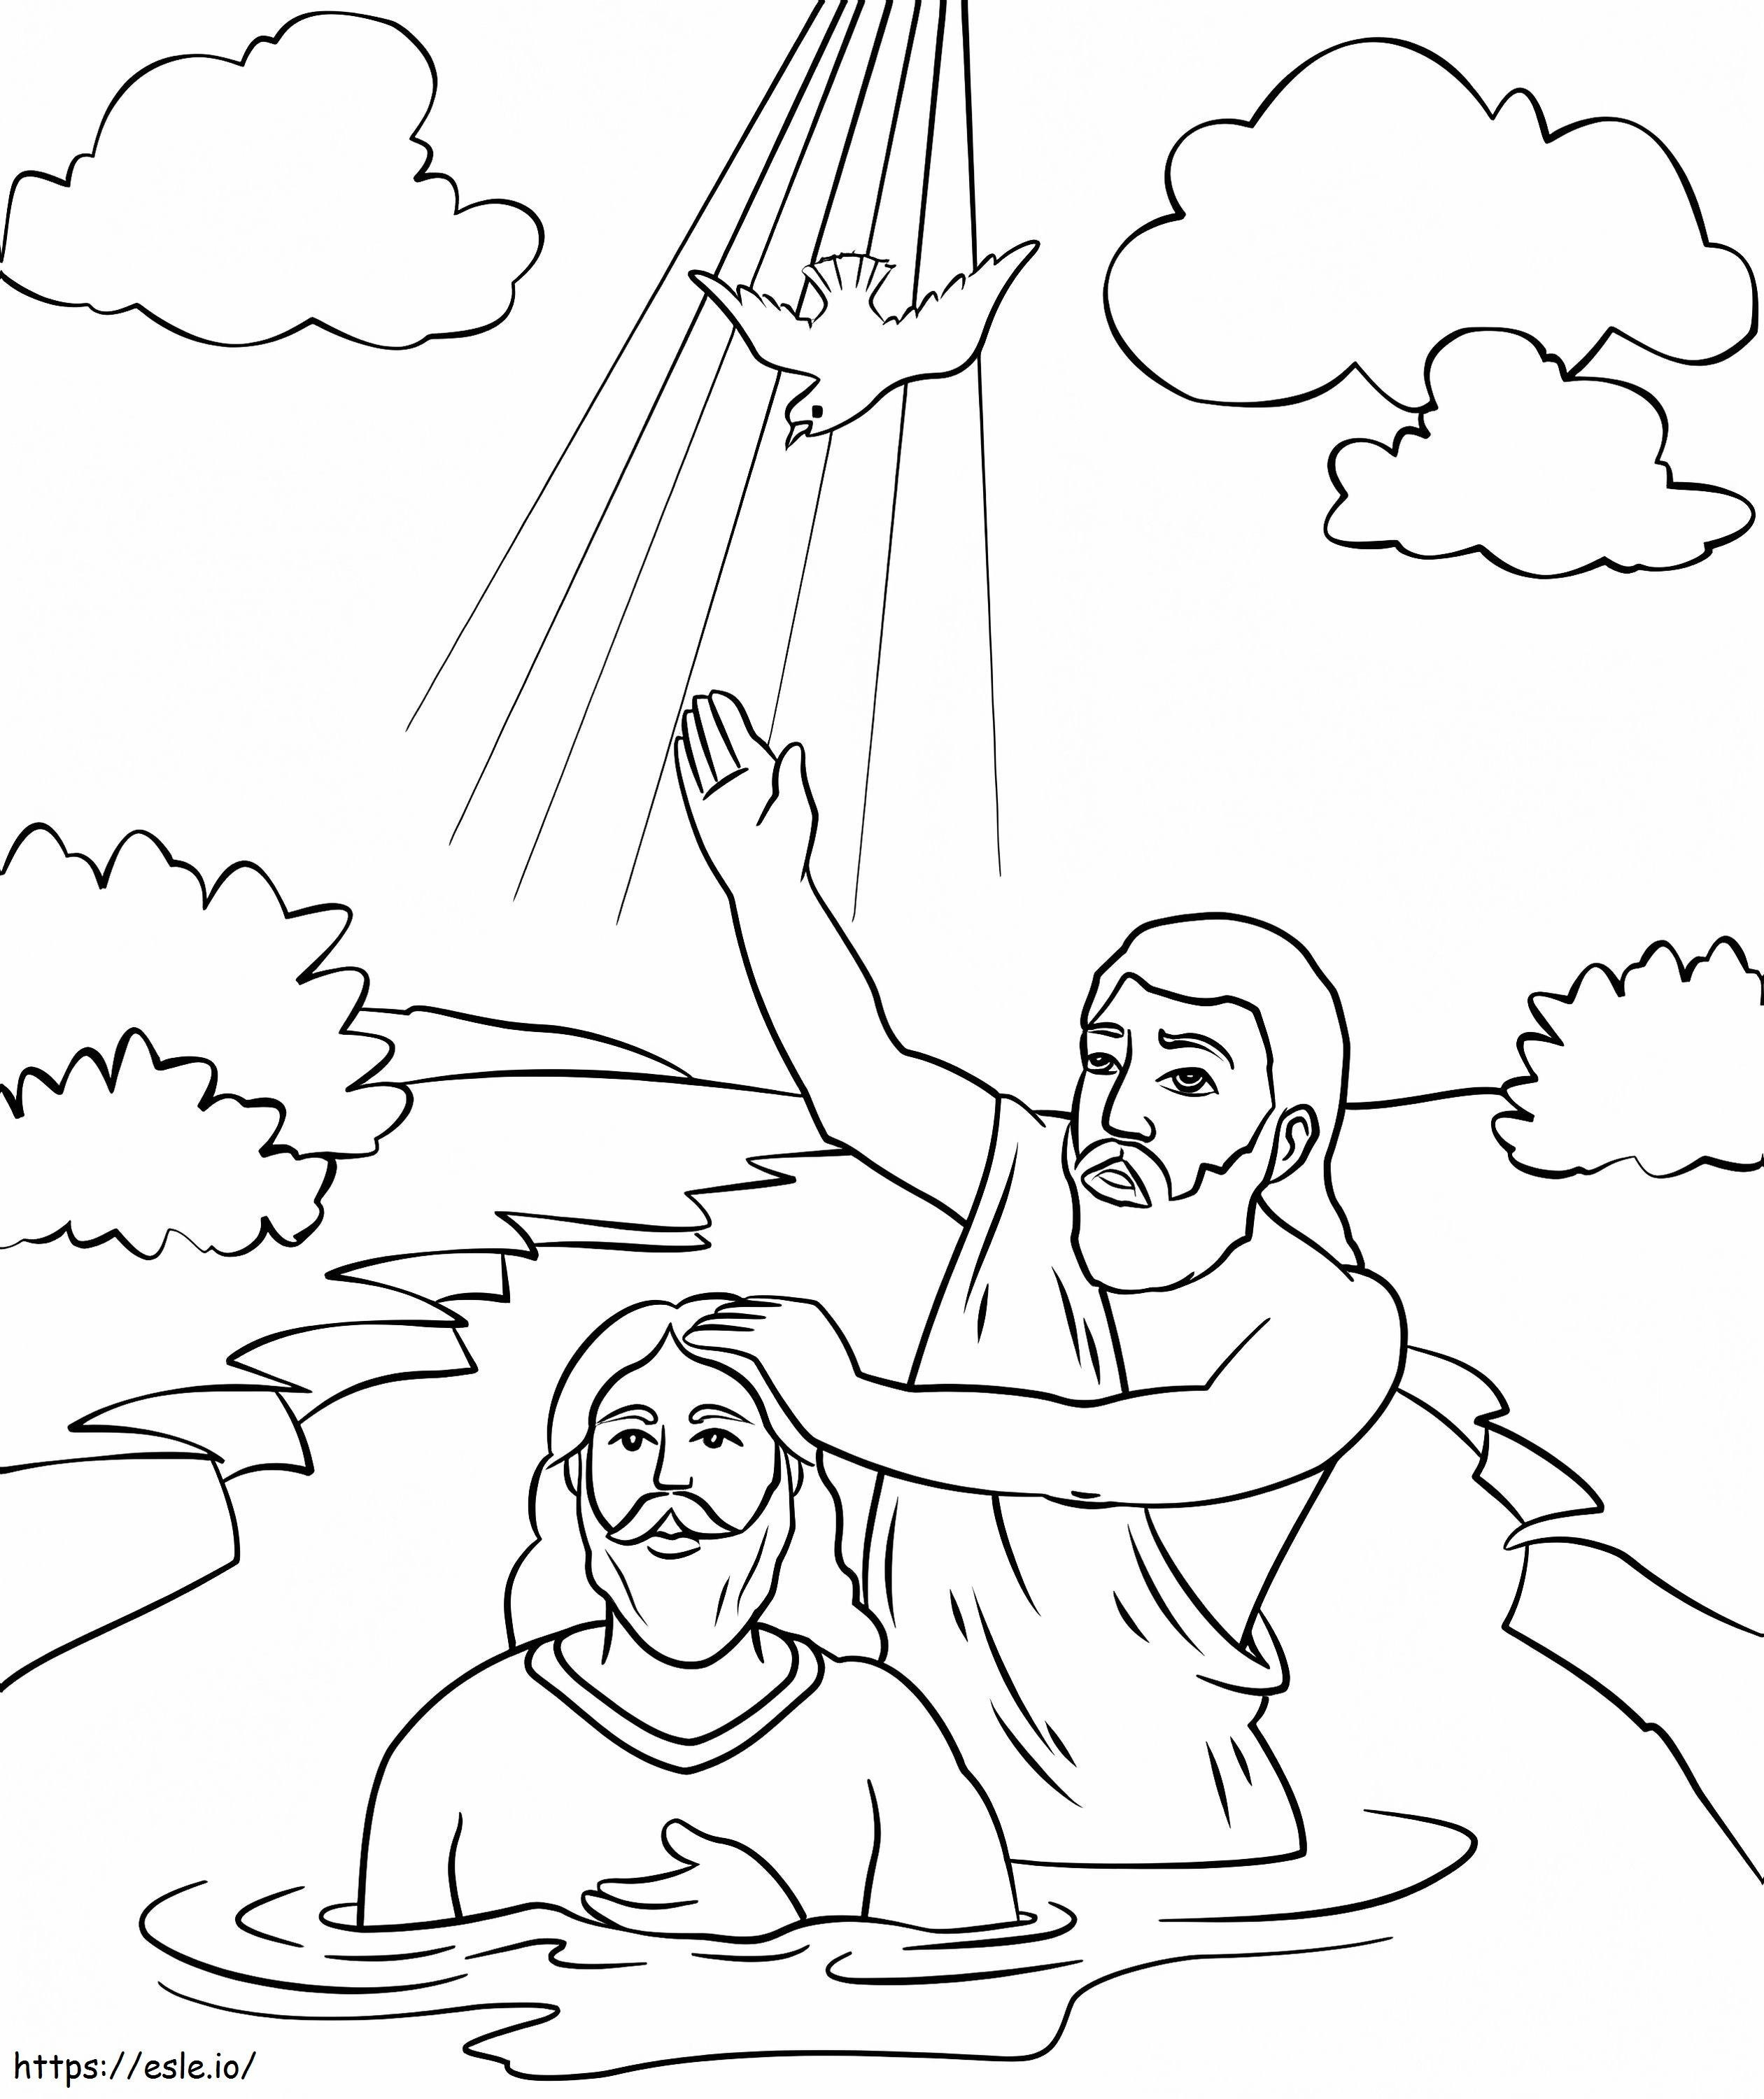 bautismo de jesus para colorear